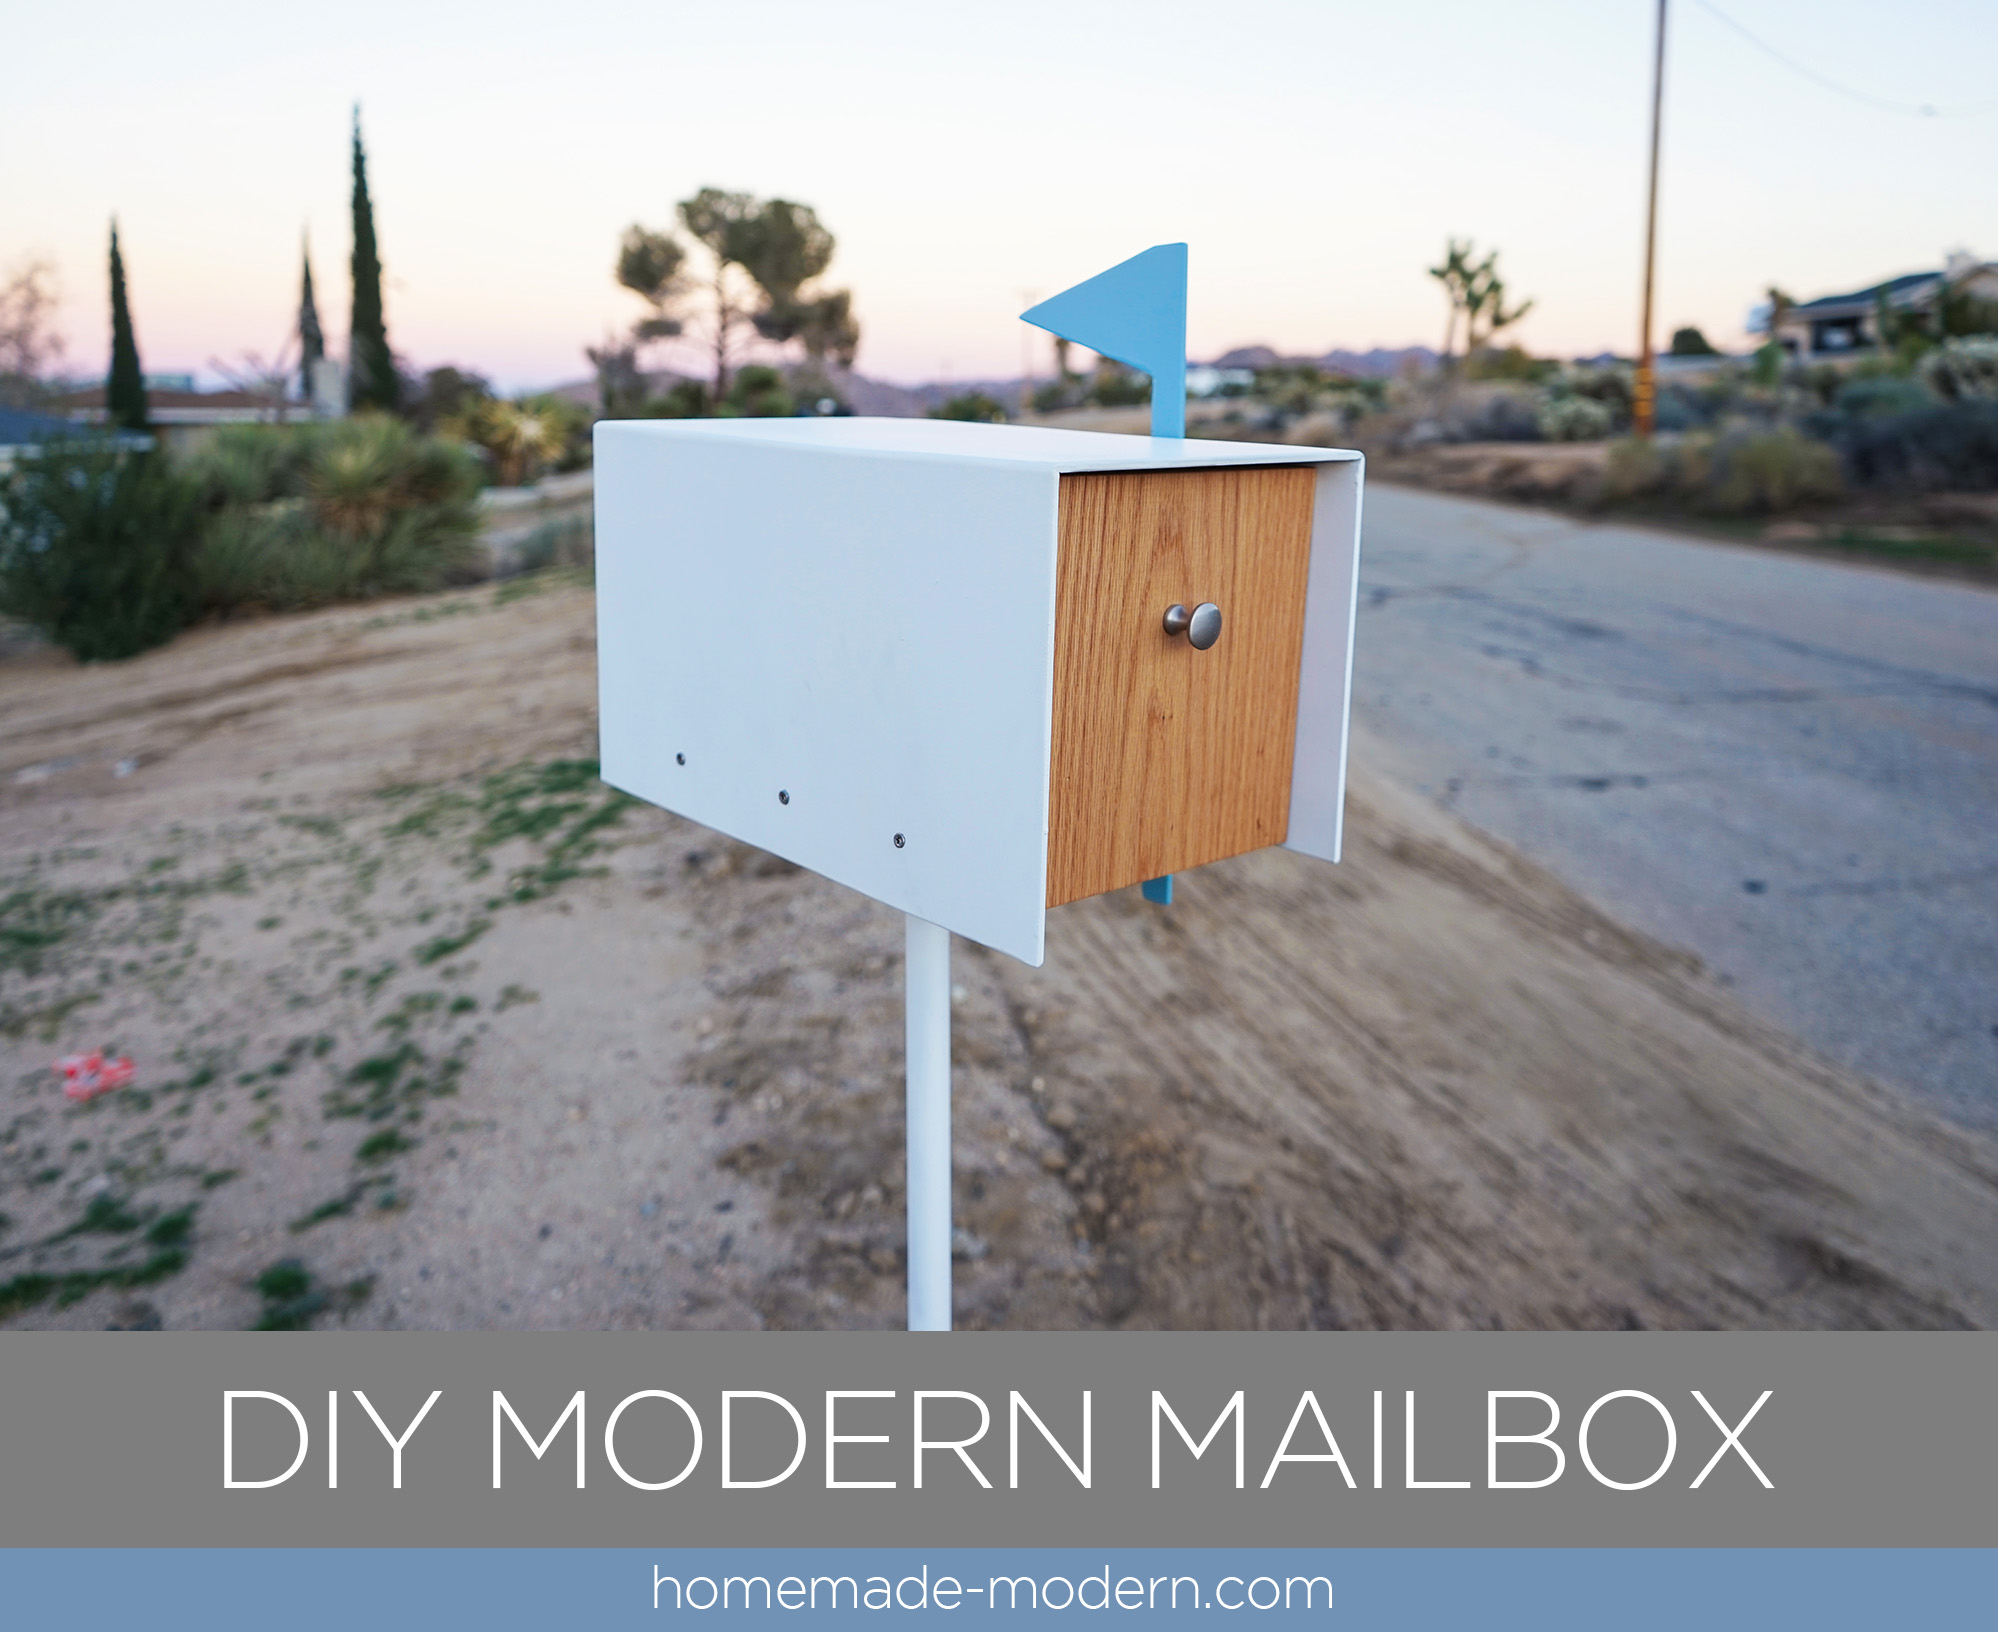 http://www.homemade-modern.com/wp-content/uploads/2018/12/diymodernmailbox-banner.jpg